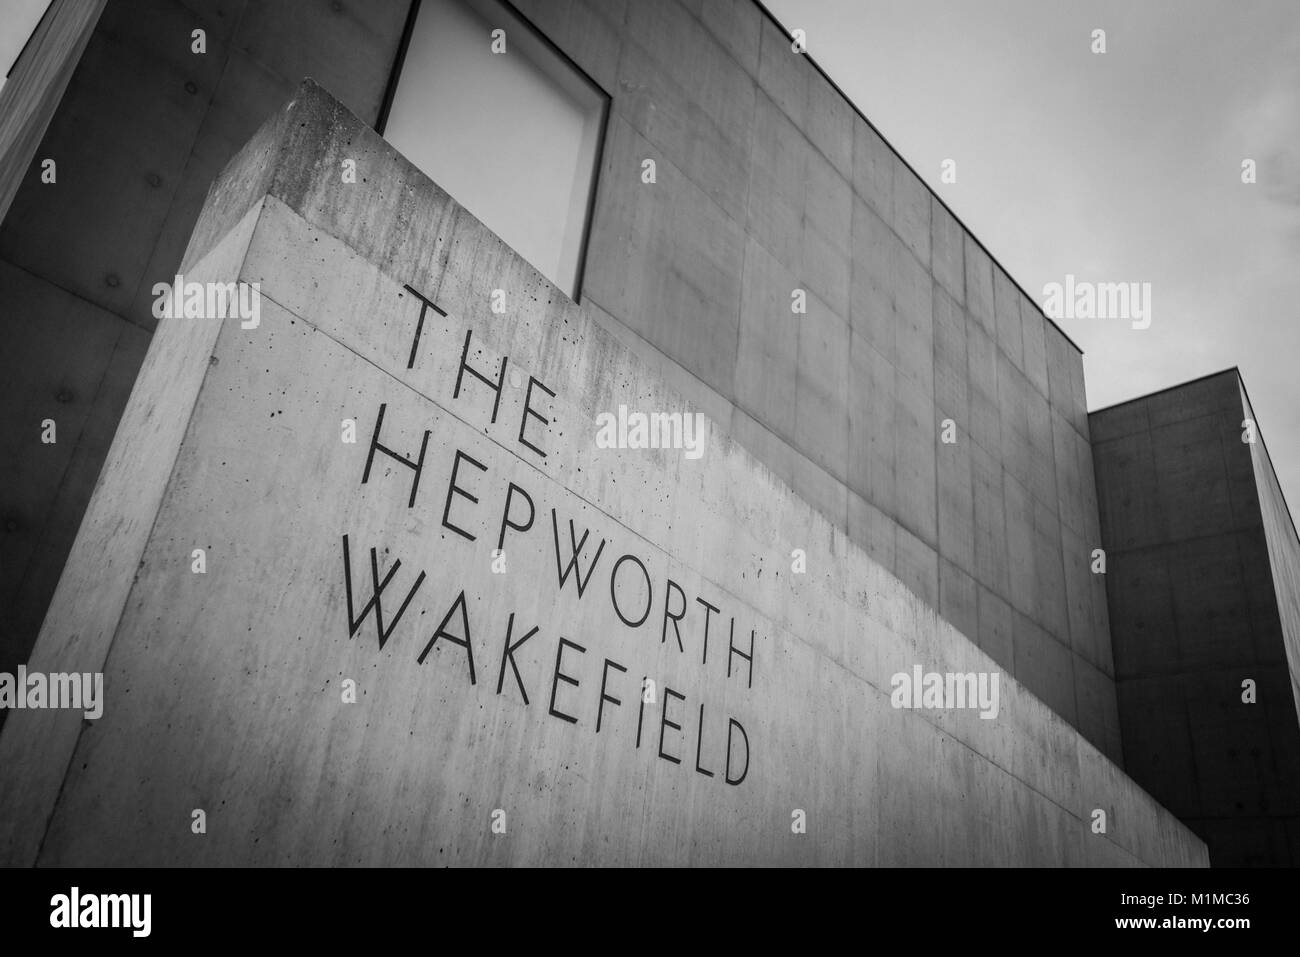 Bianco e nero immagini astratte dell'esterno del Museo Hepworth, Wakefield, Yorkshire PHILLIP ROBERTS Foto Stock